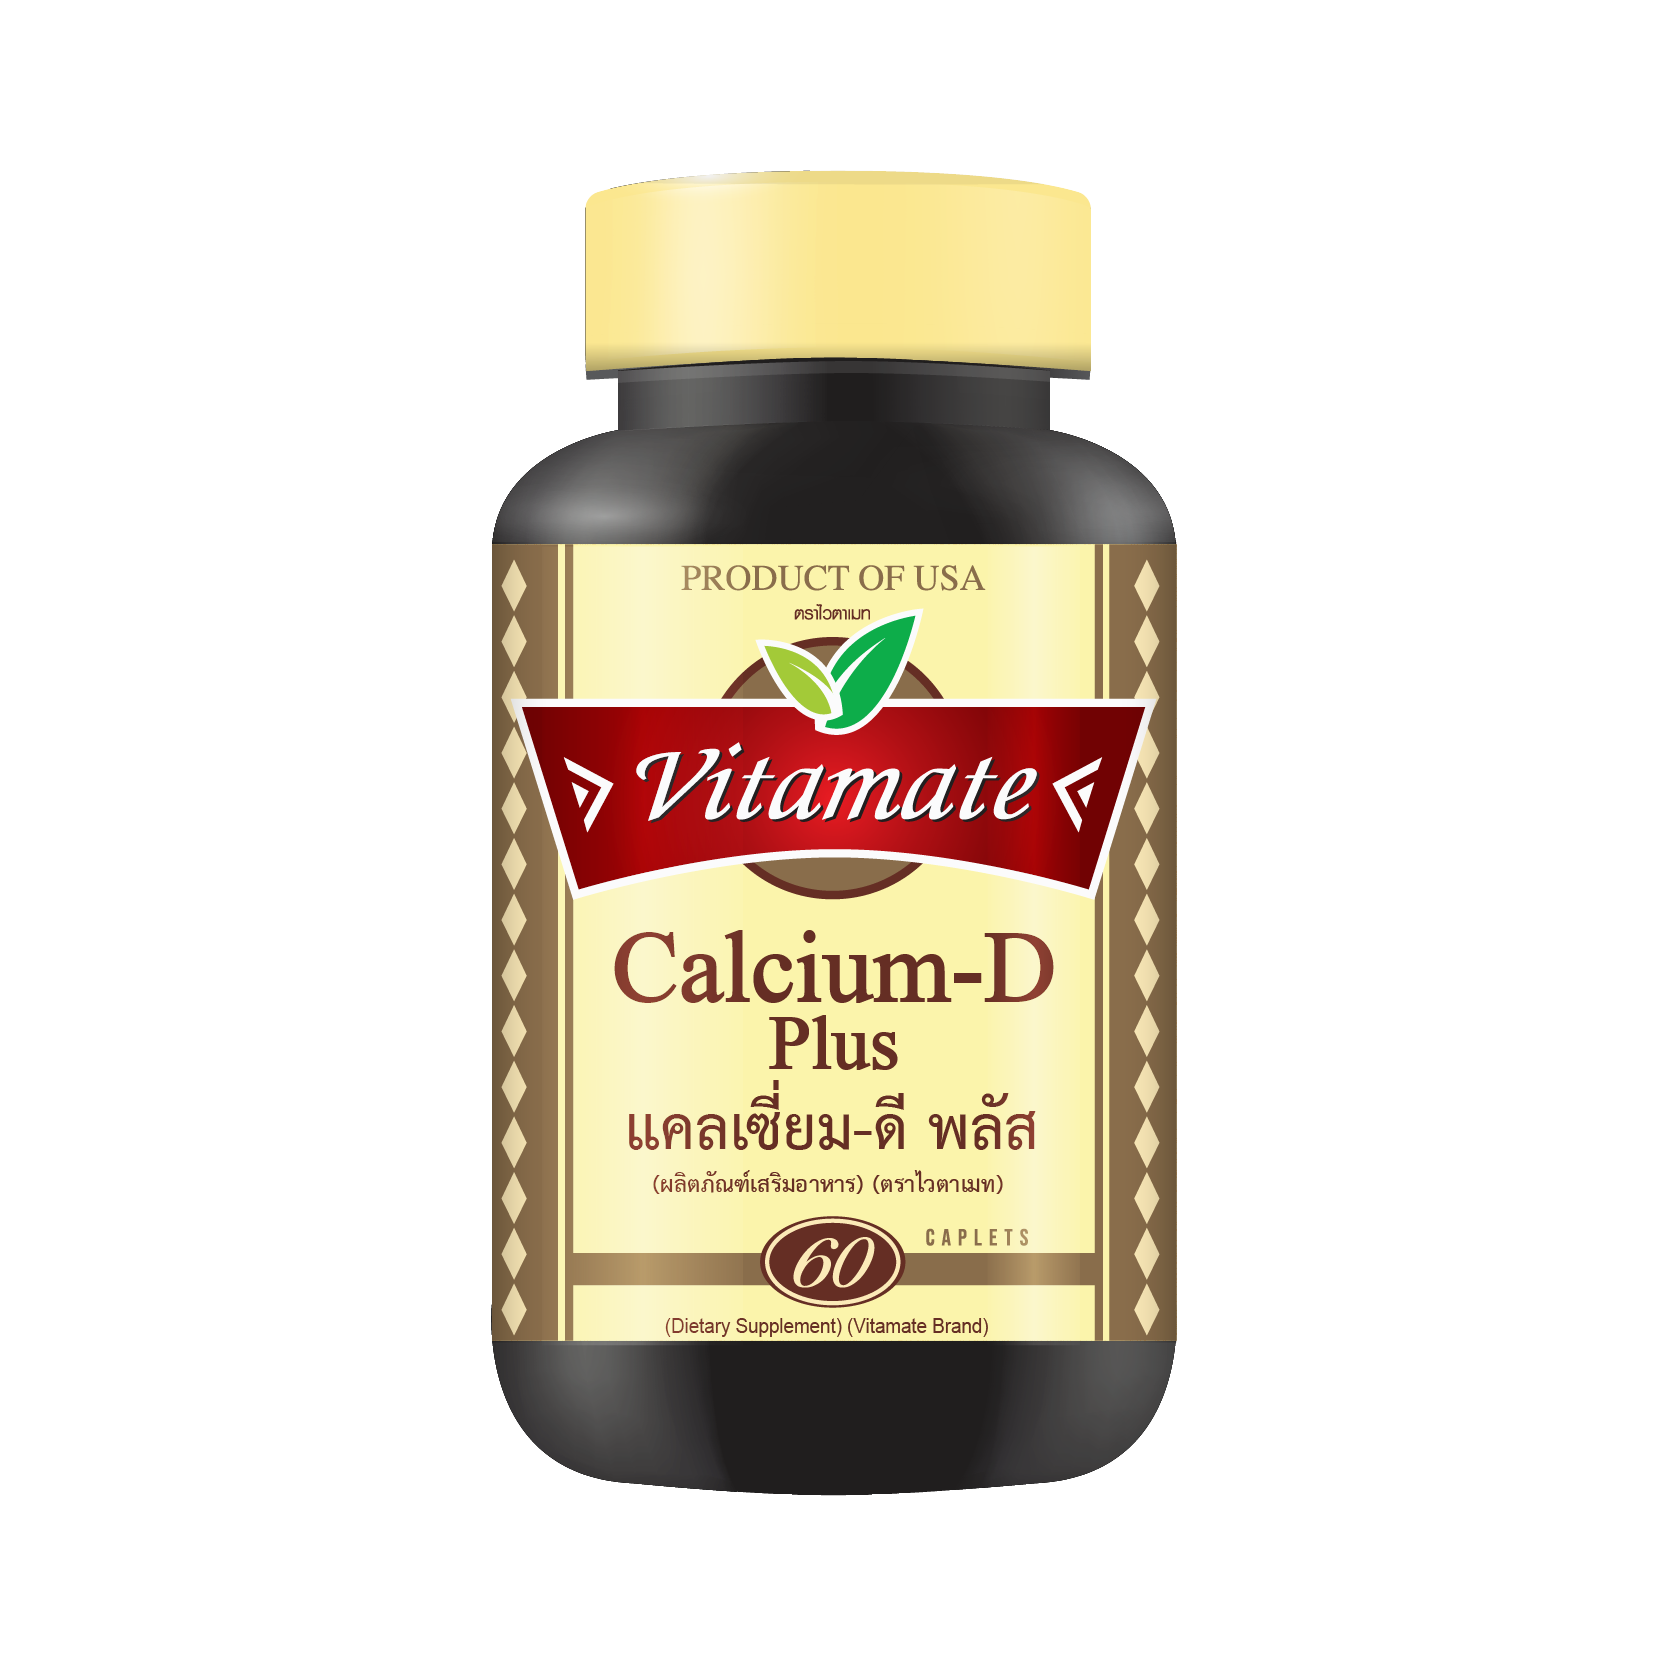 Vitamate Calcium-D plus  60 tablets